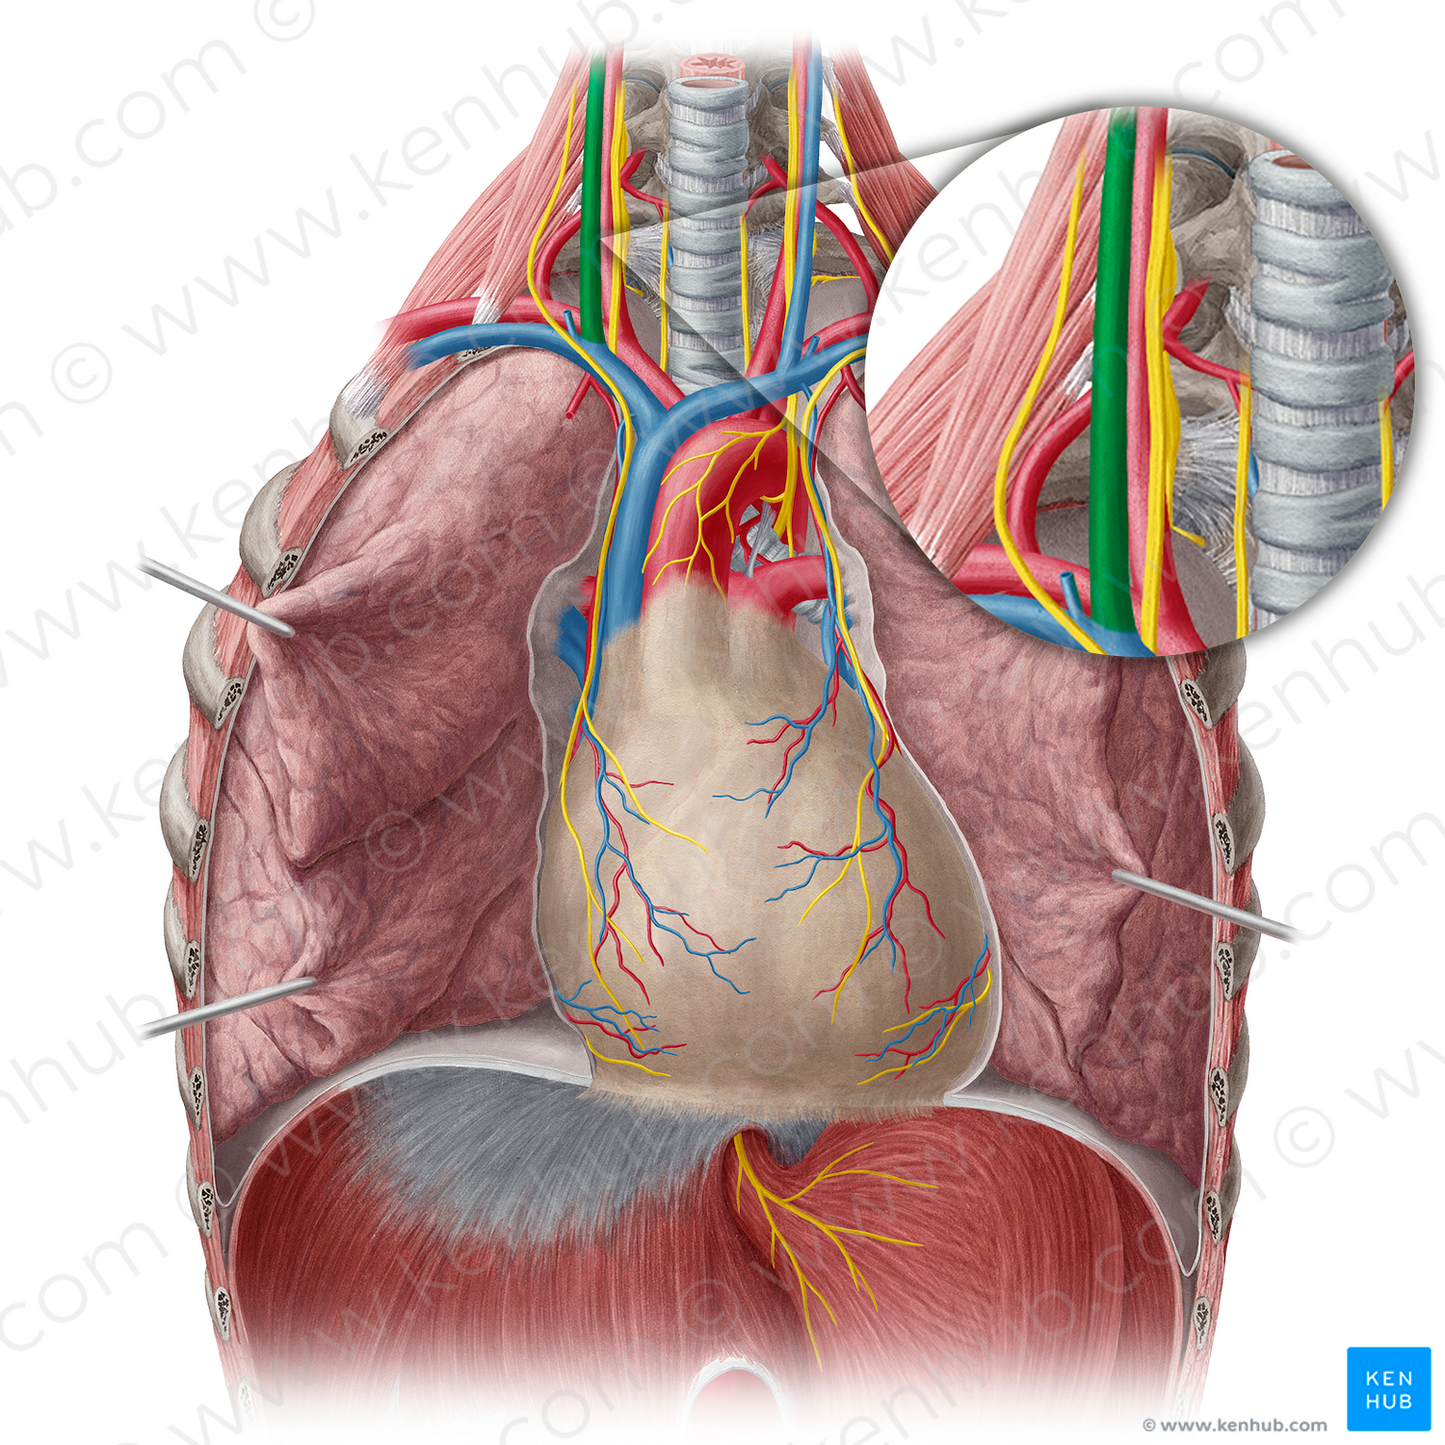 Right internal jugular vein (#10374)